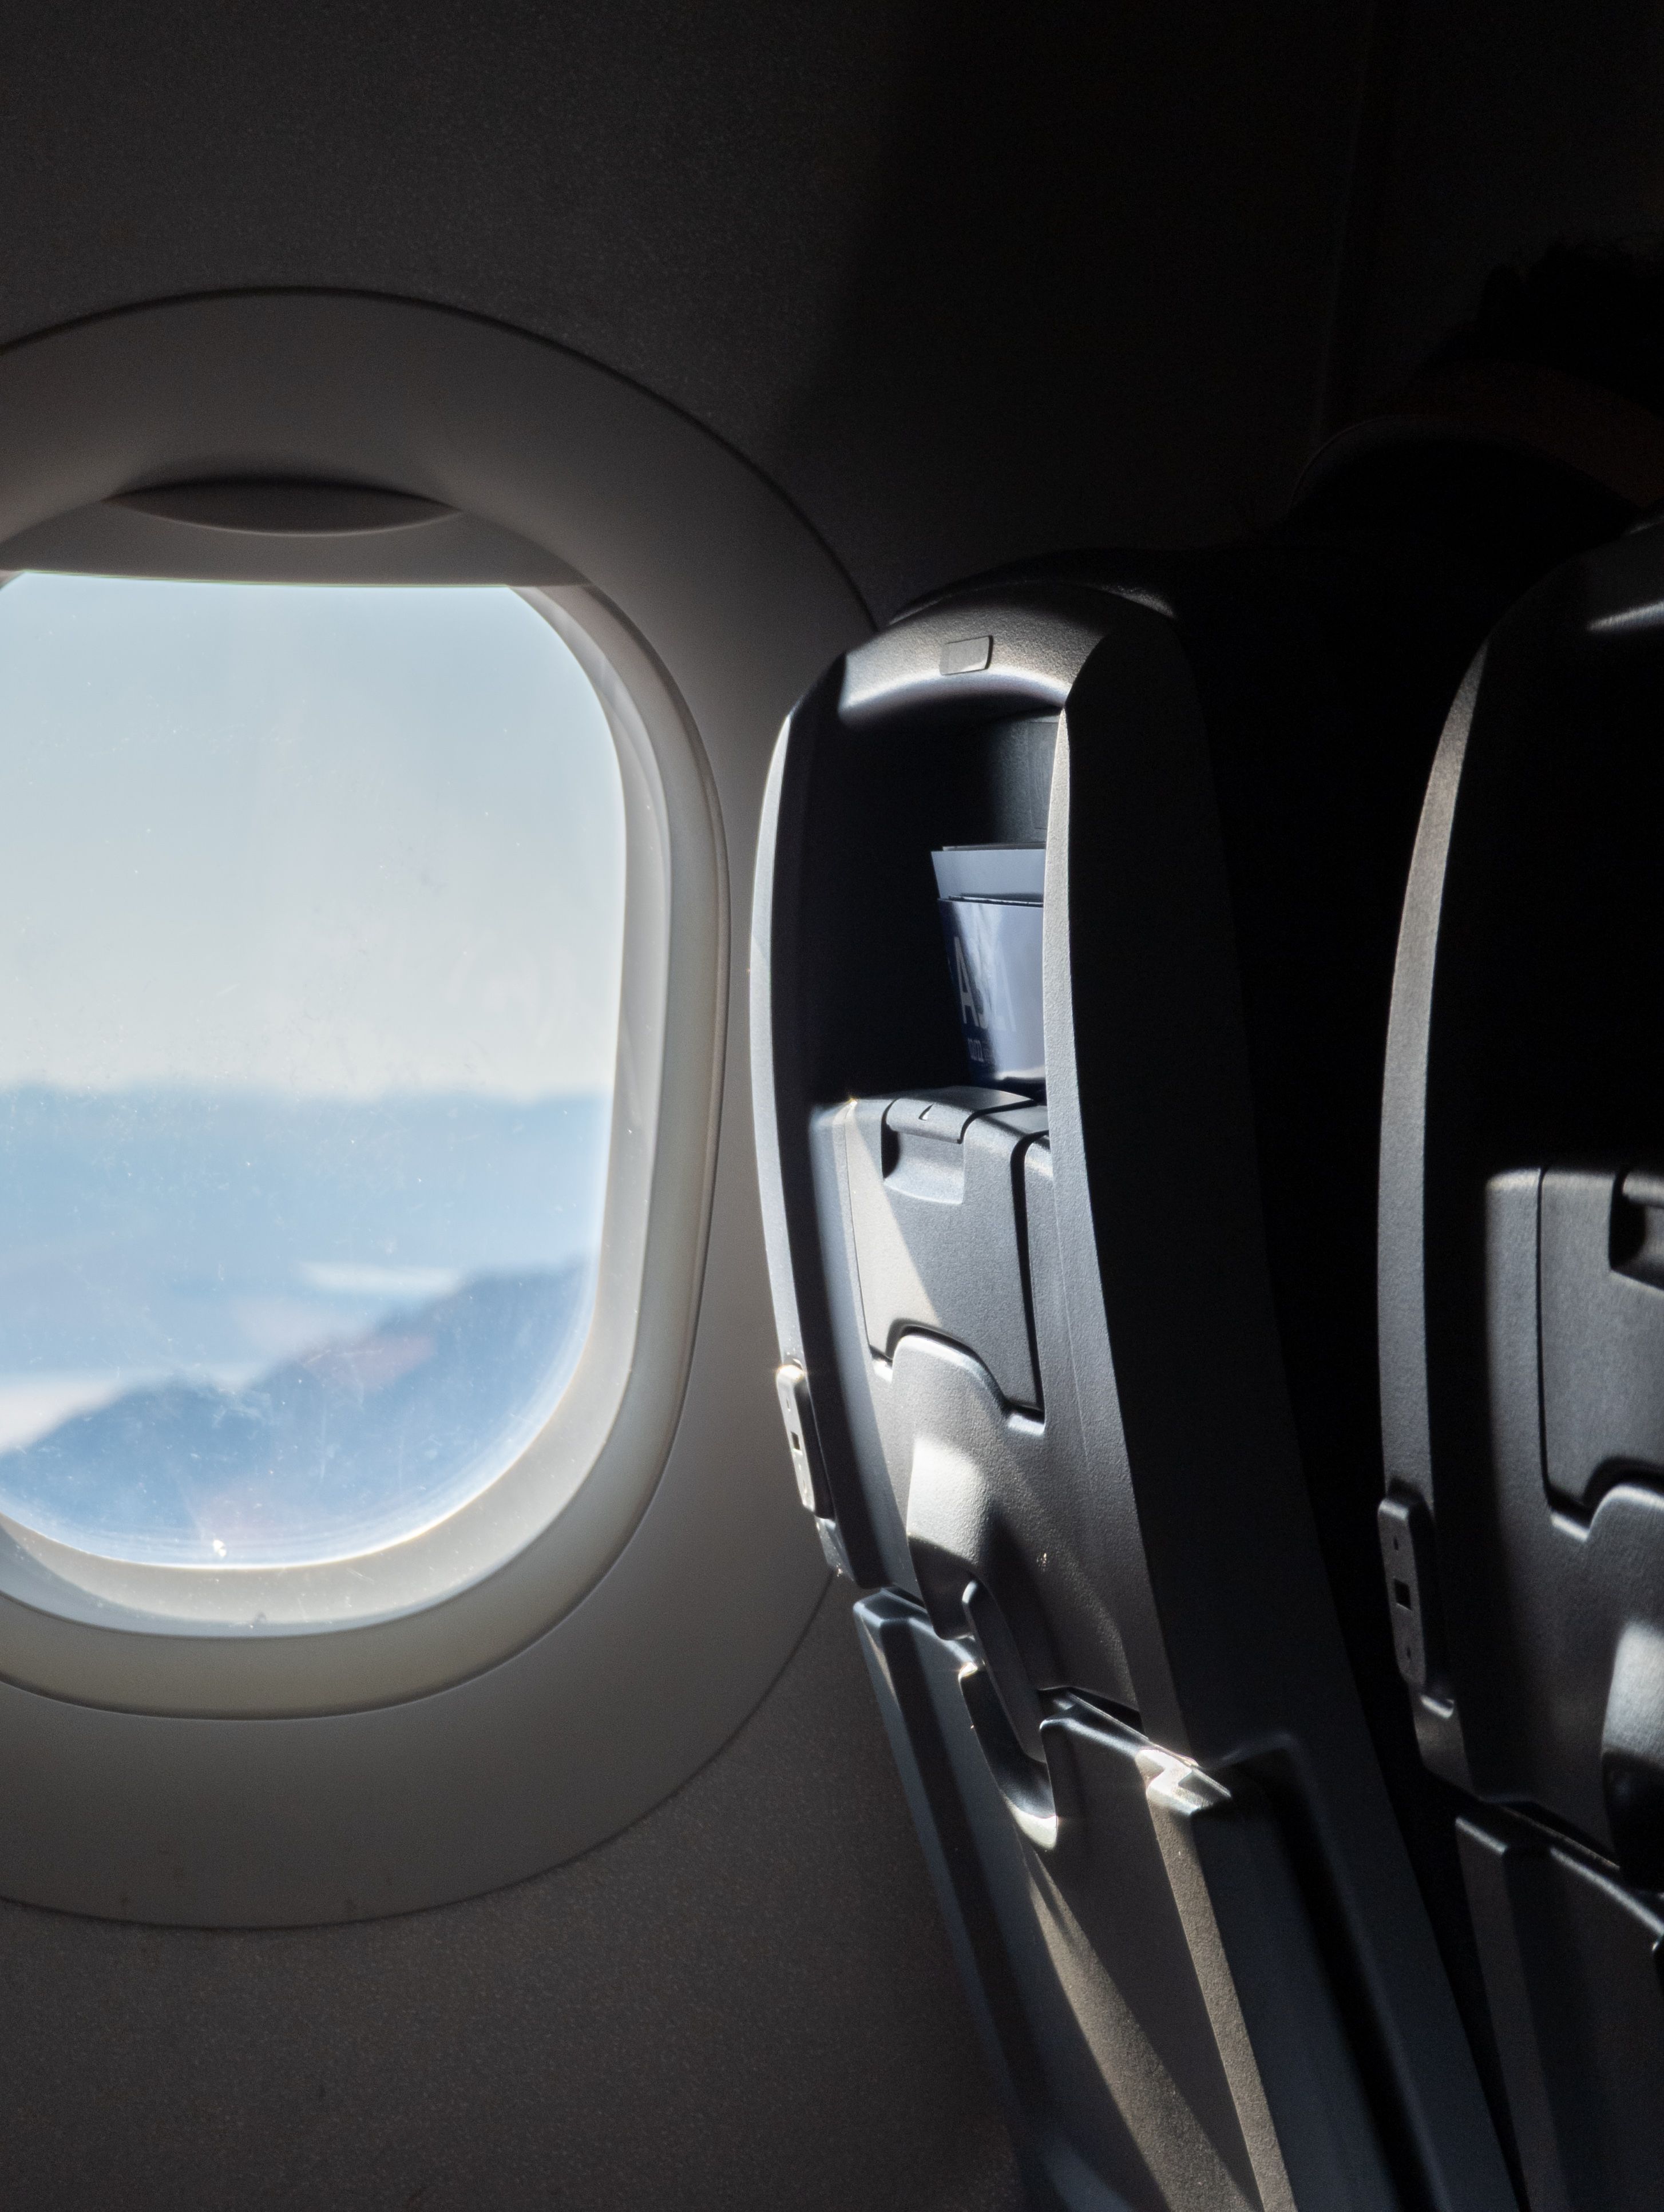 File foto RAW yang memperlihatkan jendela dan kursi pesawat, diedit untuk mengubah Sorotannya.